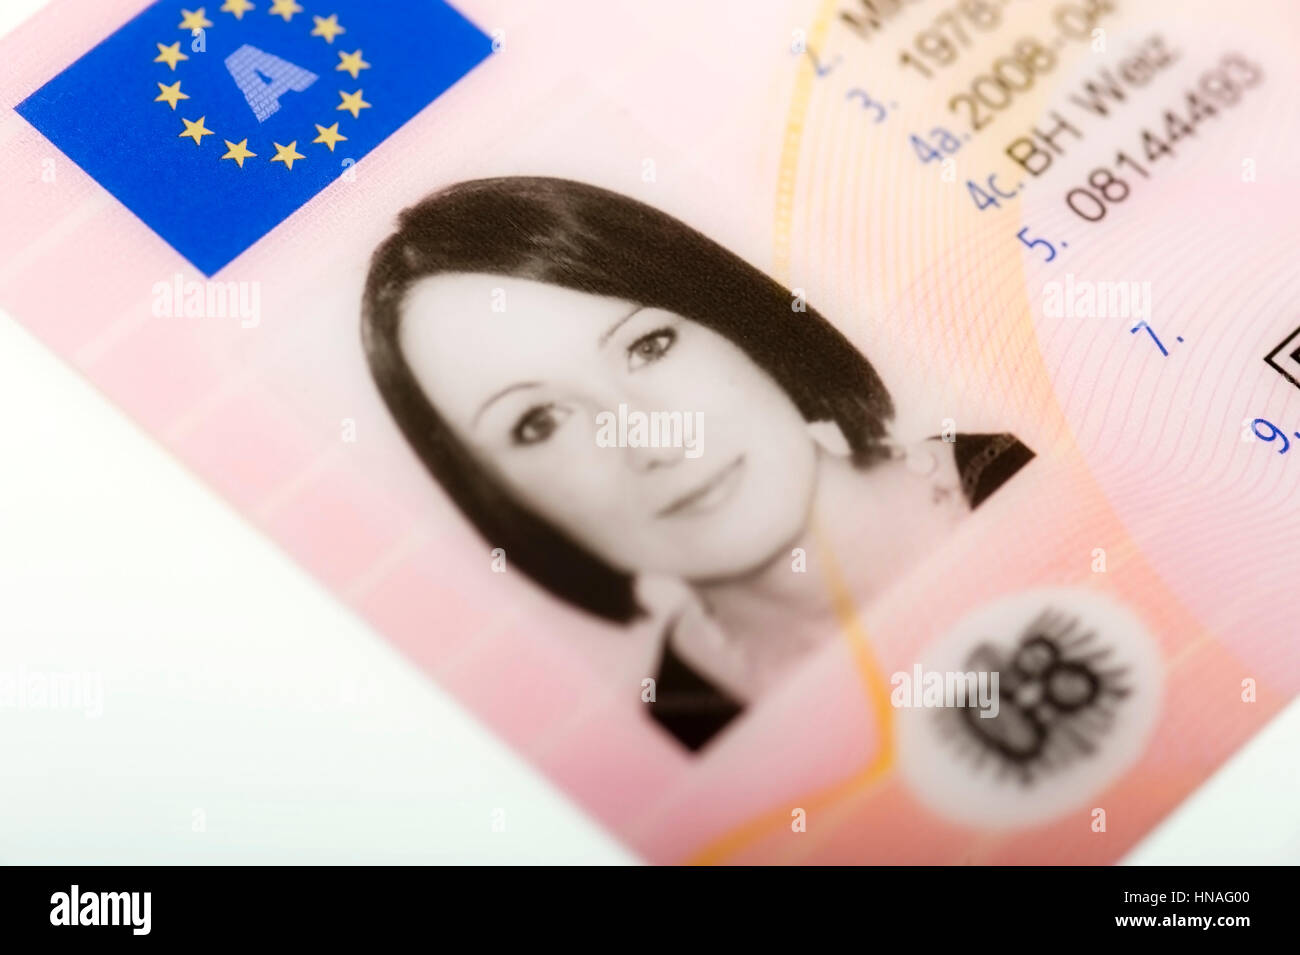 EU-Fuehrerschein, Oesterreichischer Scheckkartenfuehrerschein - österreichischen EU-Führerschein Stockfoto